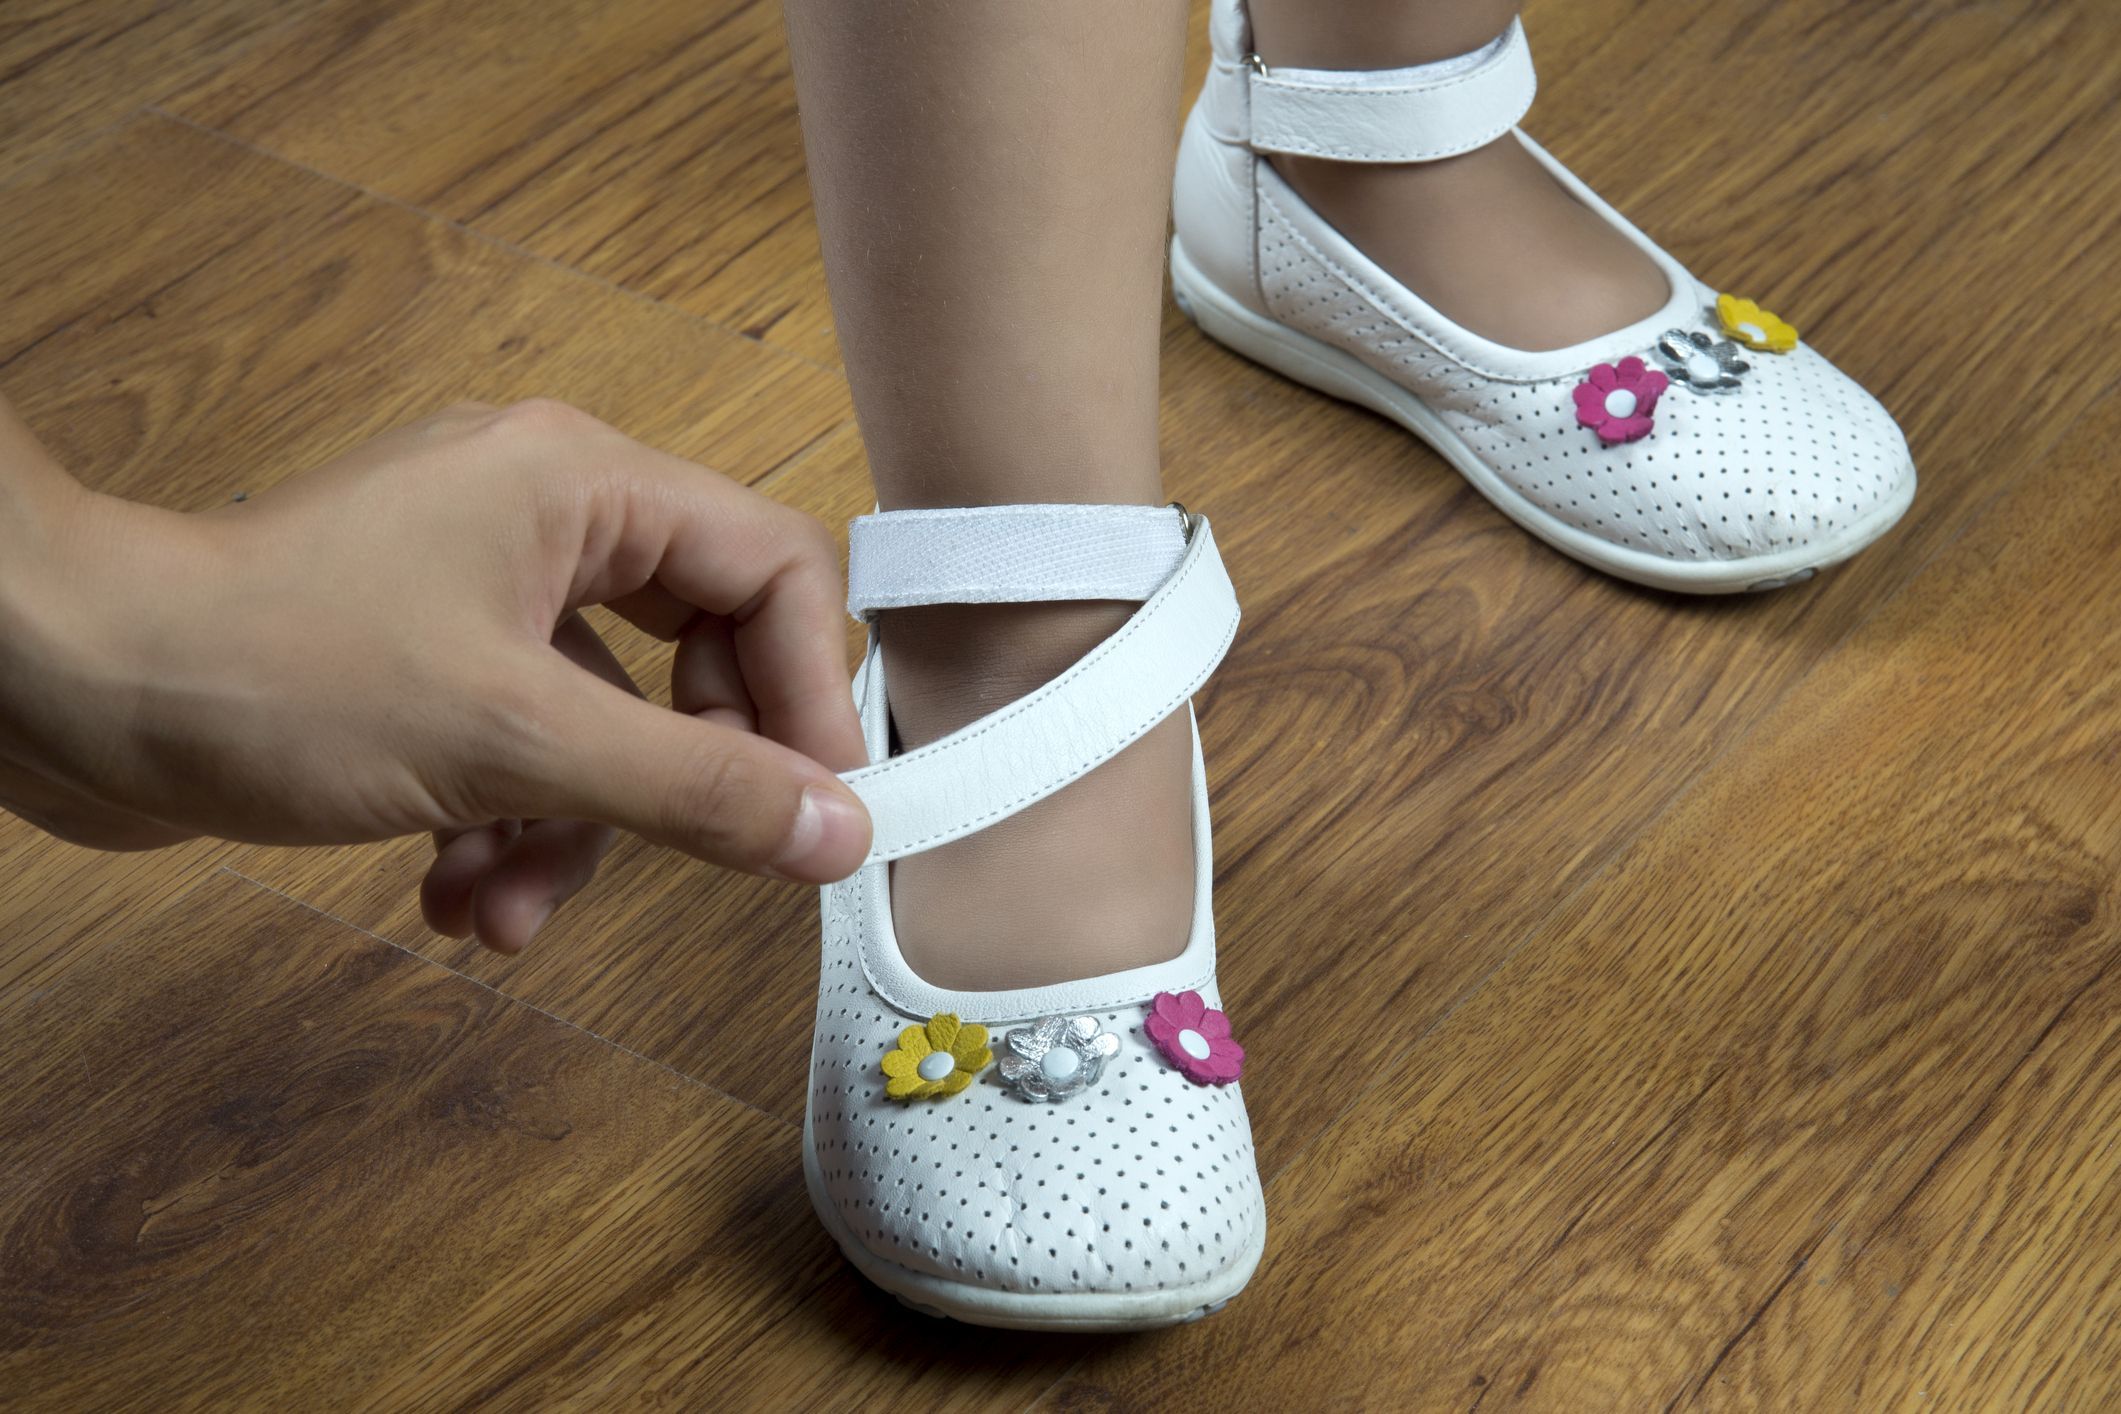 Impactantes fotos: niña de años sufrió una infección mortal tras probarse unos zapatos | Radio Mitre